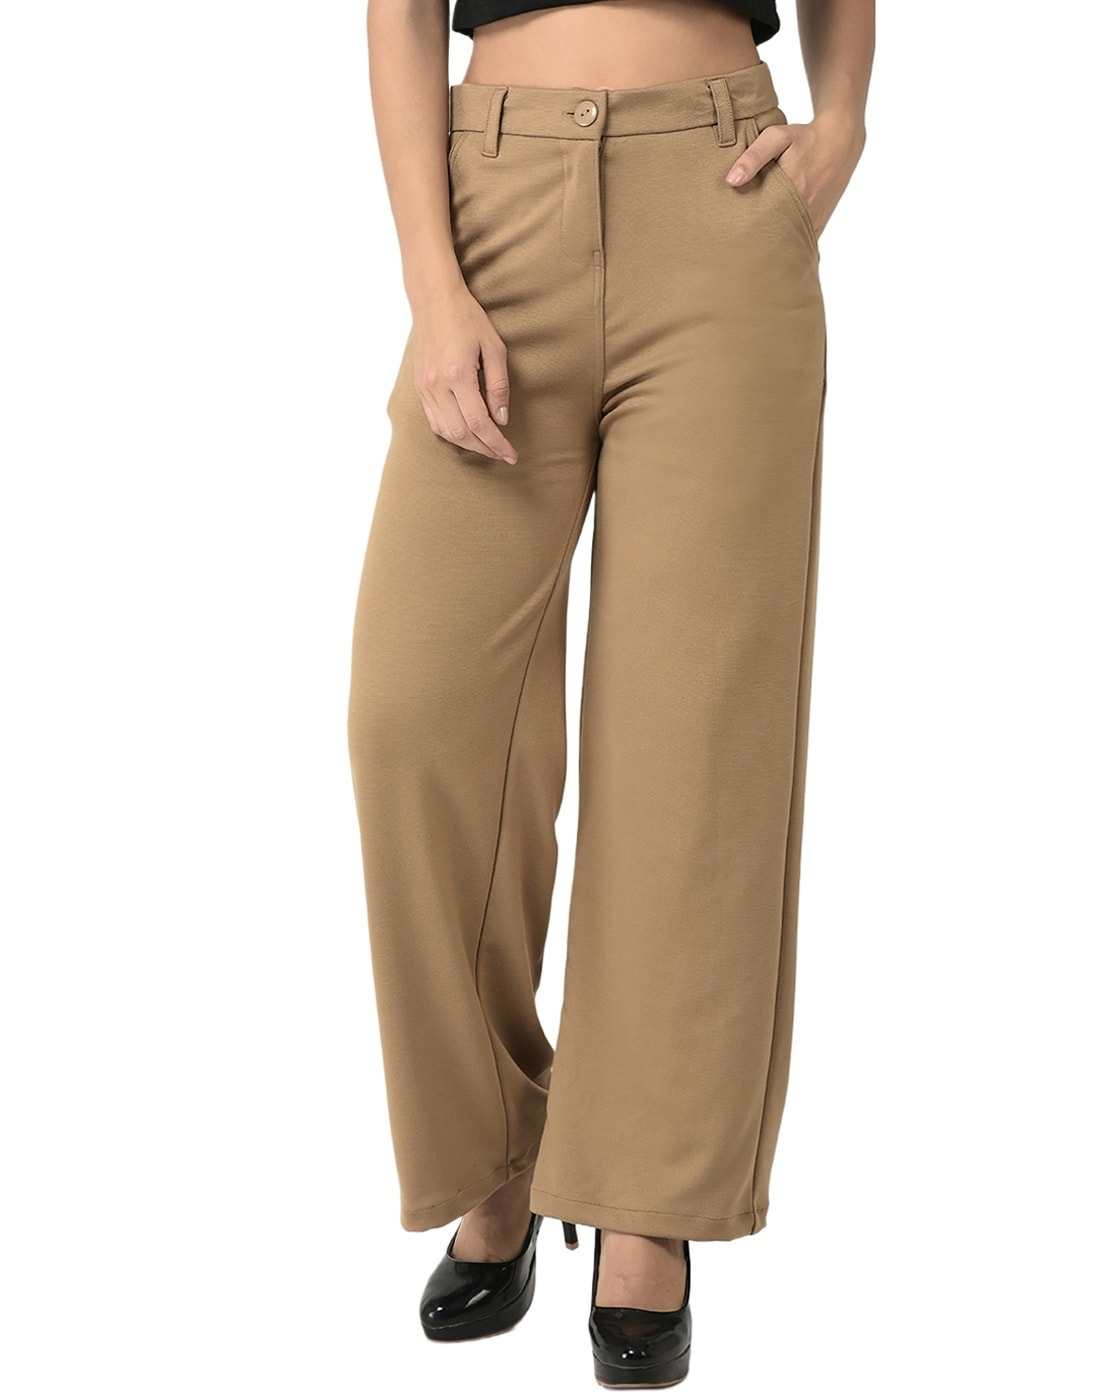 Buy Black Trousers & Pants for Women by BROADSTAR Online | Ajio.com